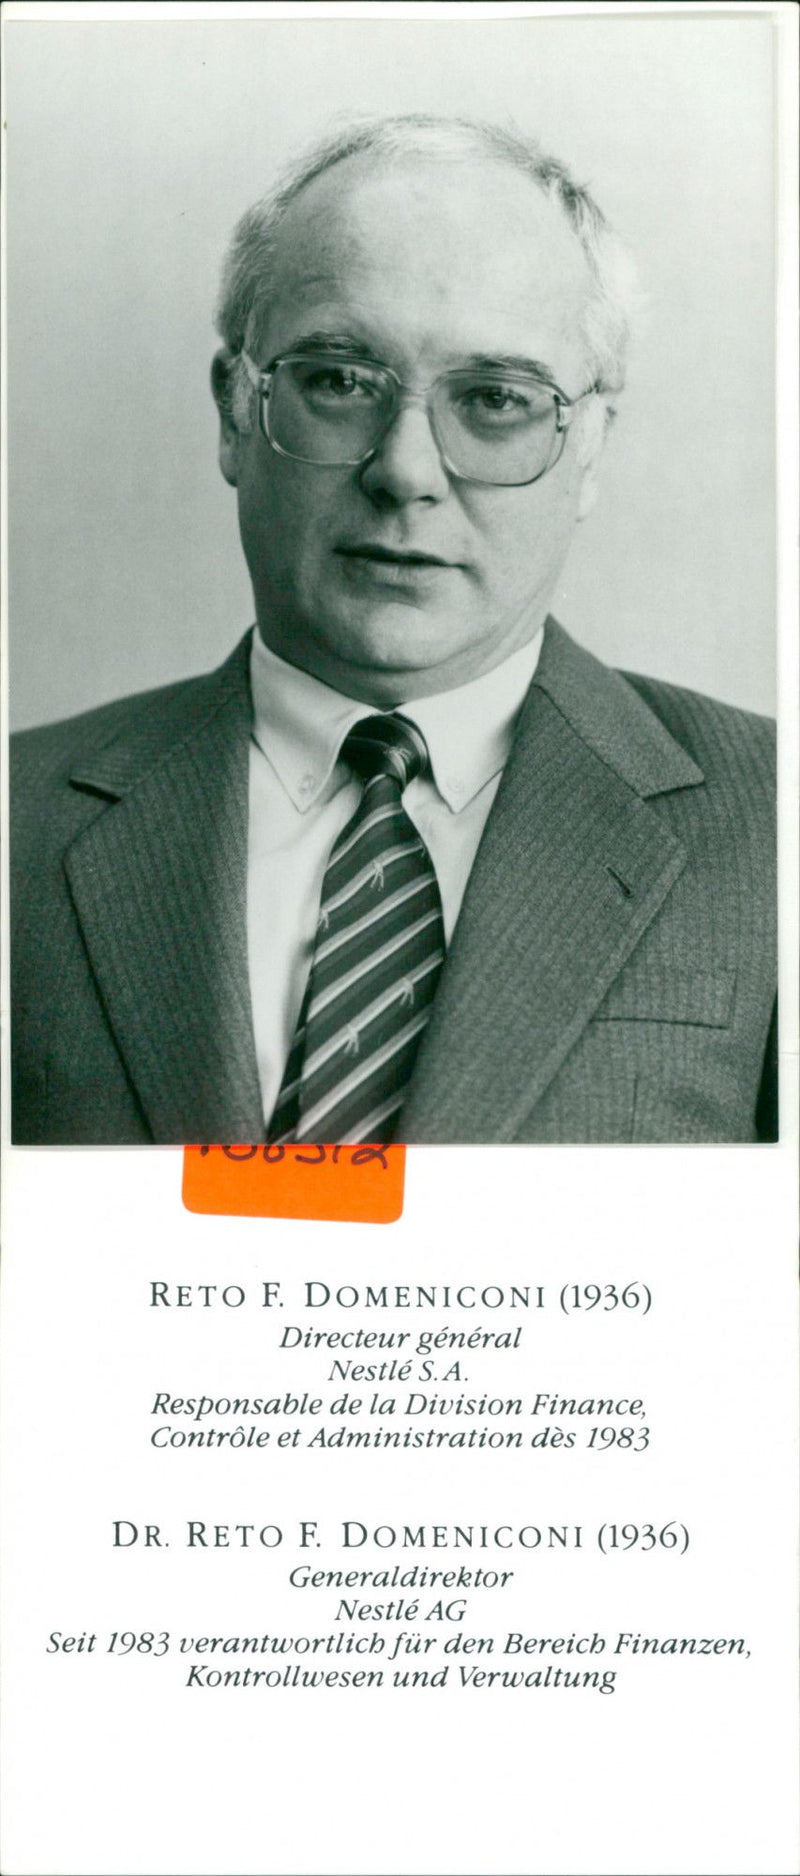 Reto F. Domeniconi (1936) - Vintage Photograph